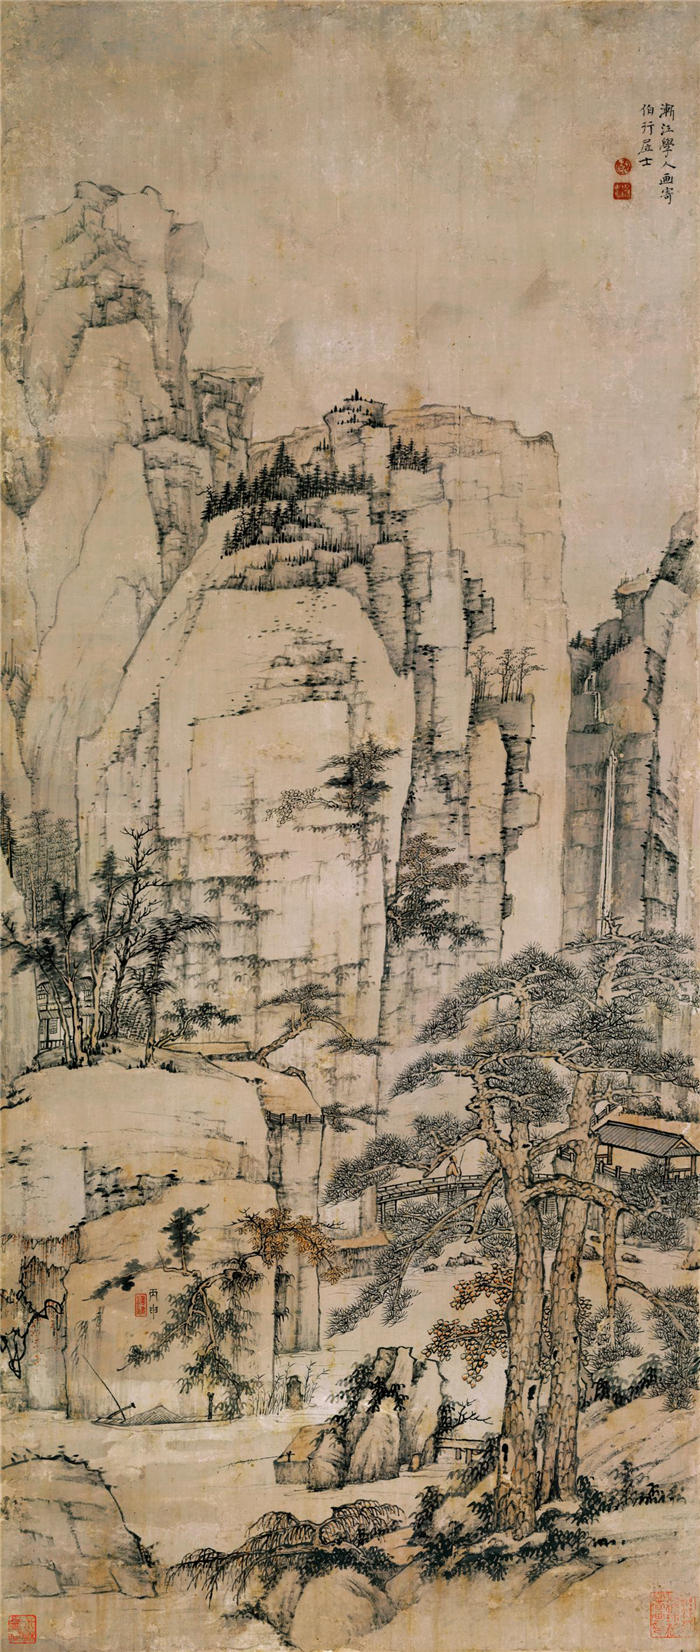 弘仁-《松溪石壁图》-纸本作品高清下载